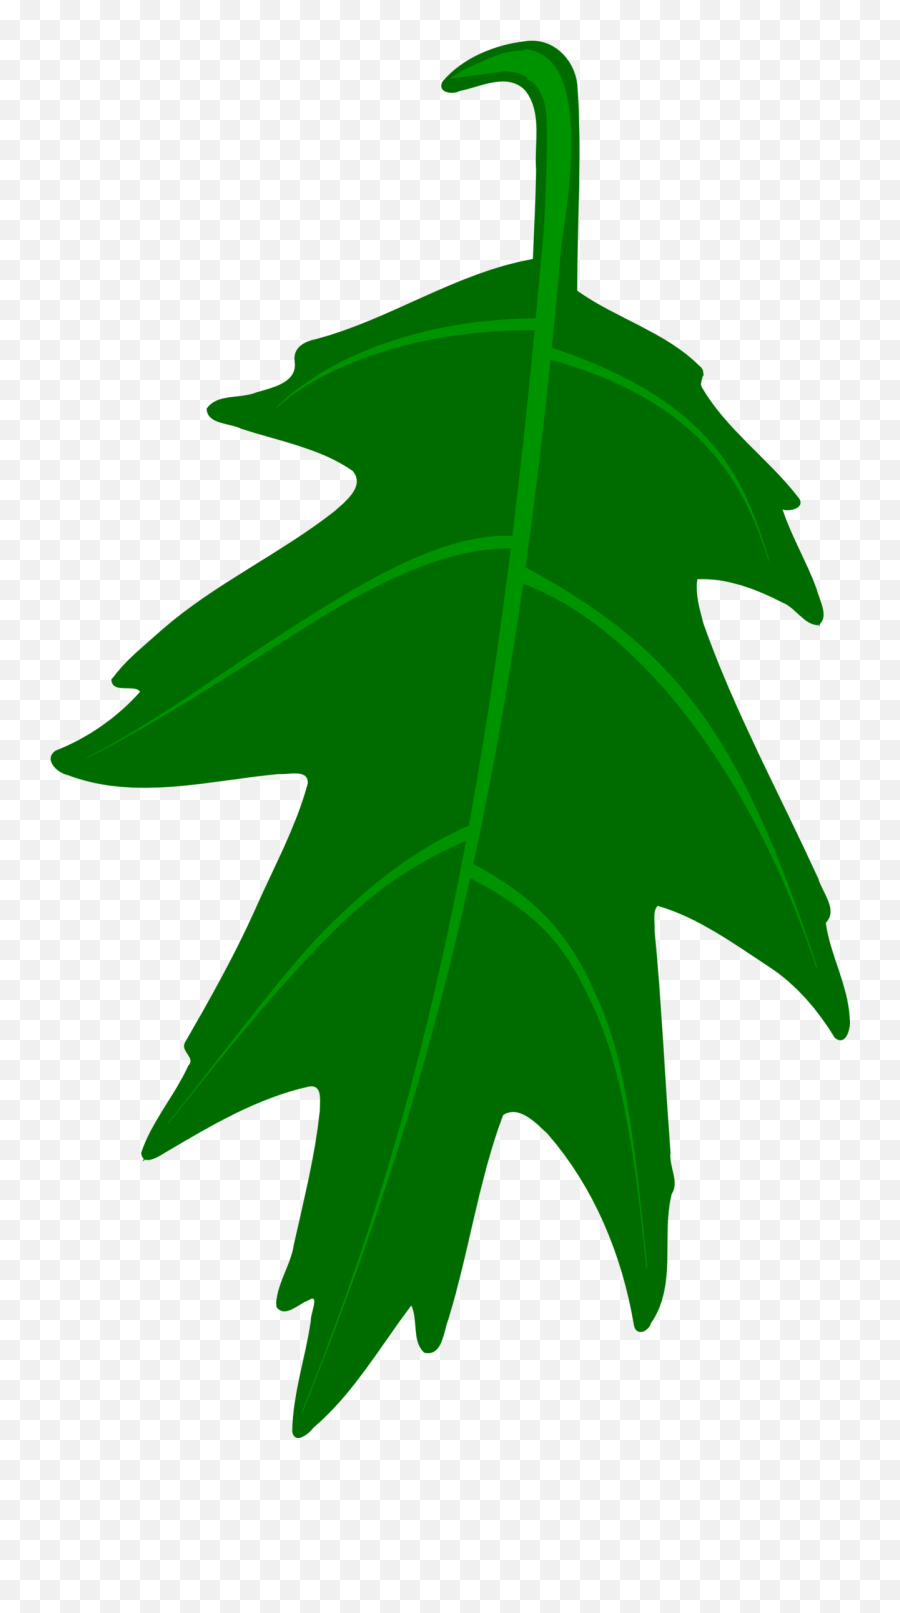 Free Oak Leaf Vector Png Images Emoji,Oak Leaf Clipart